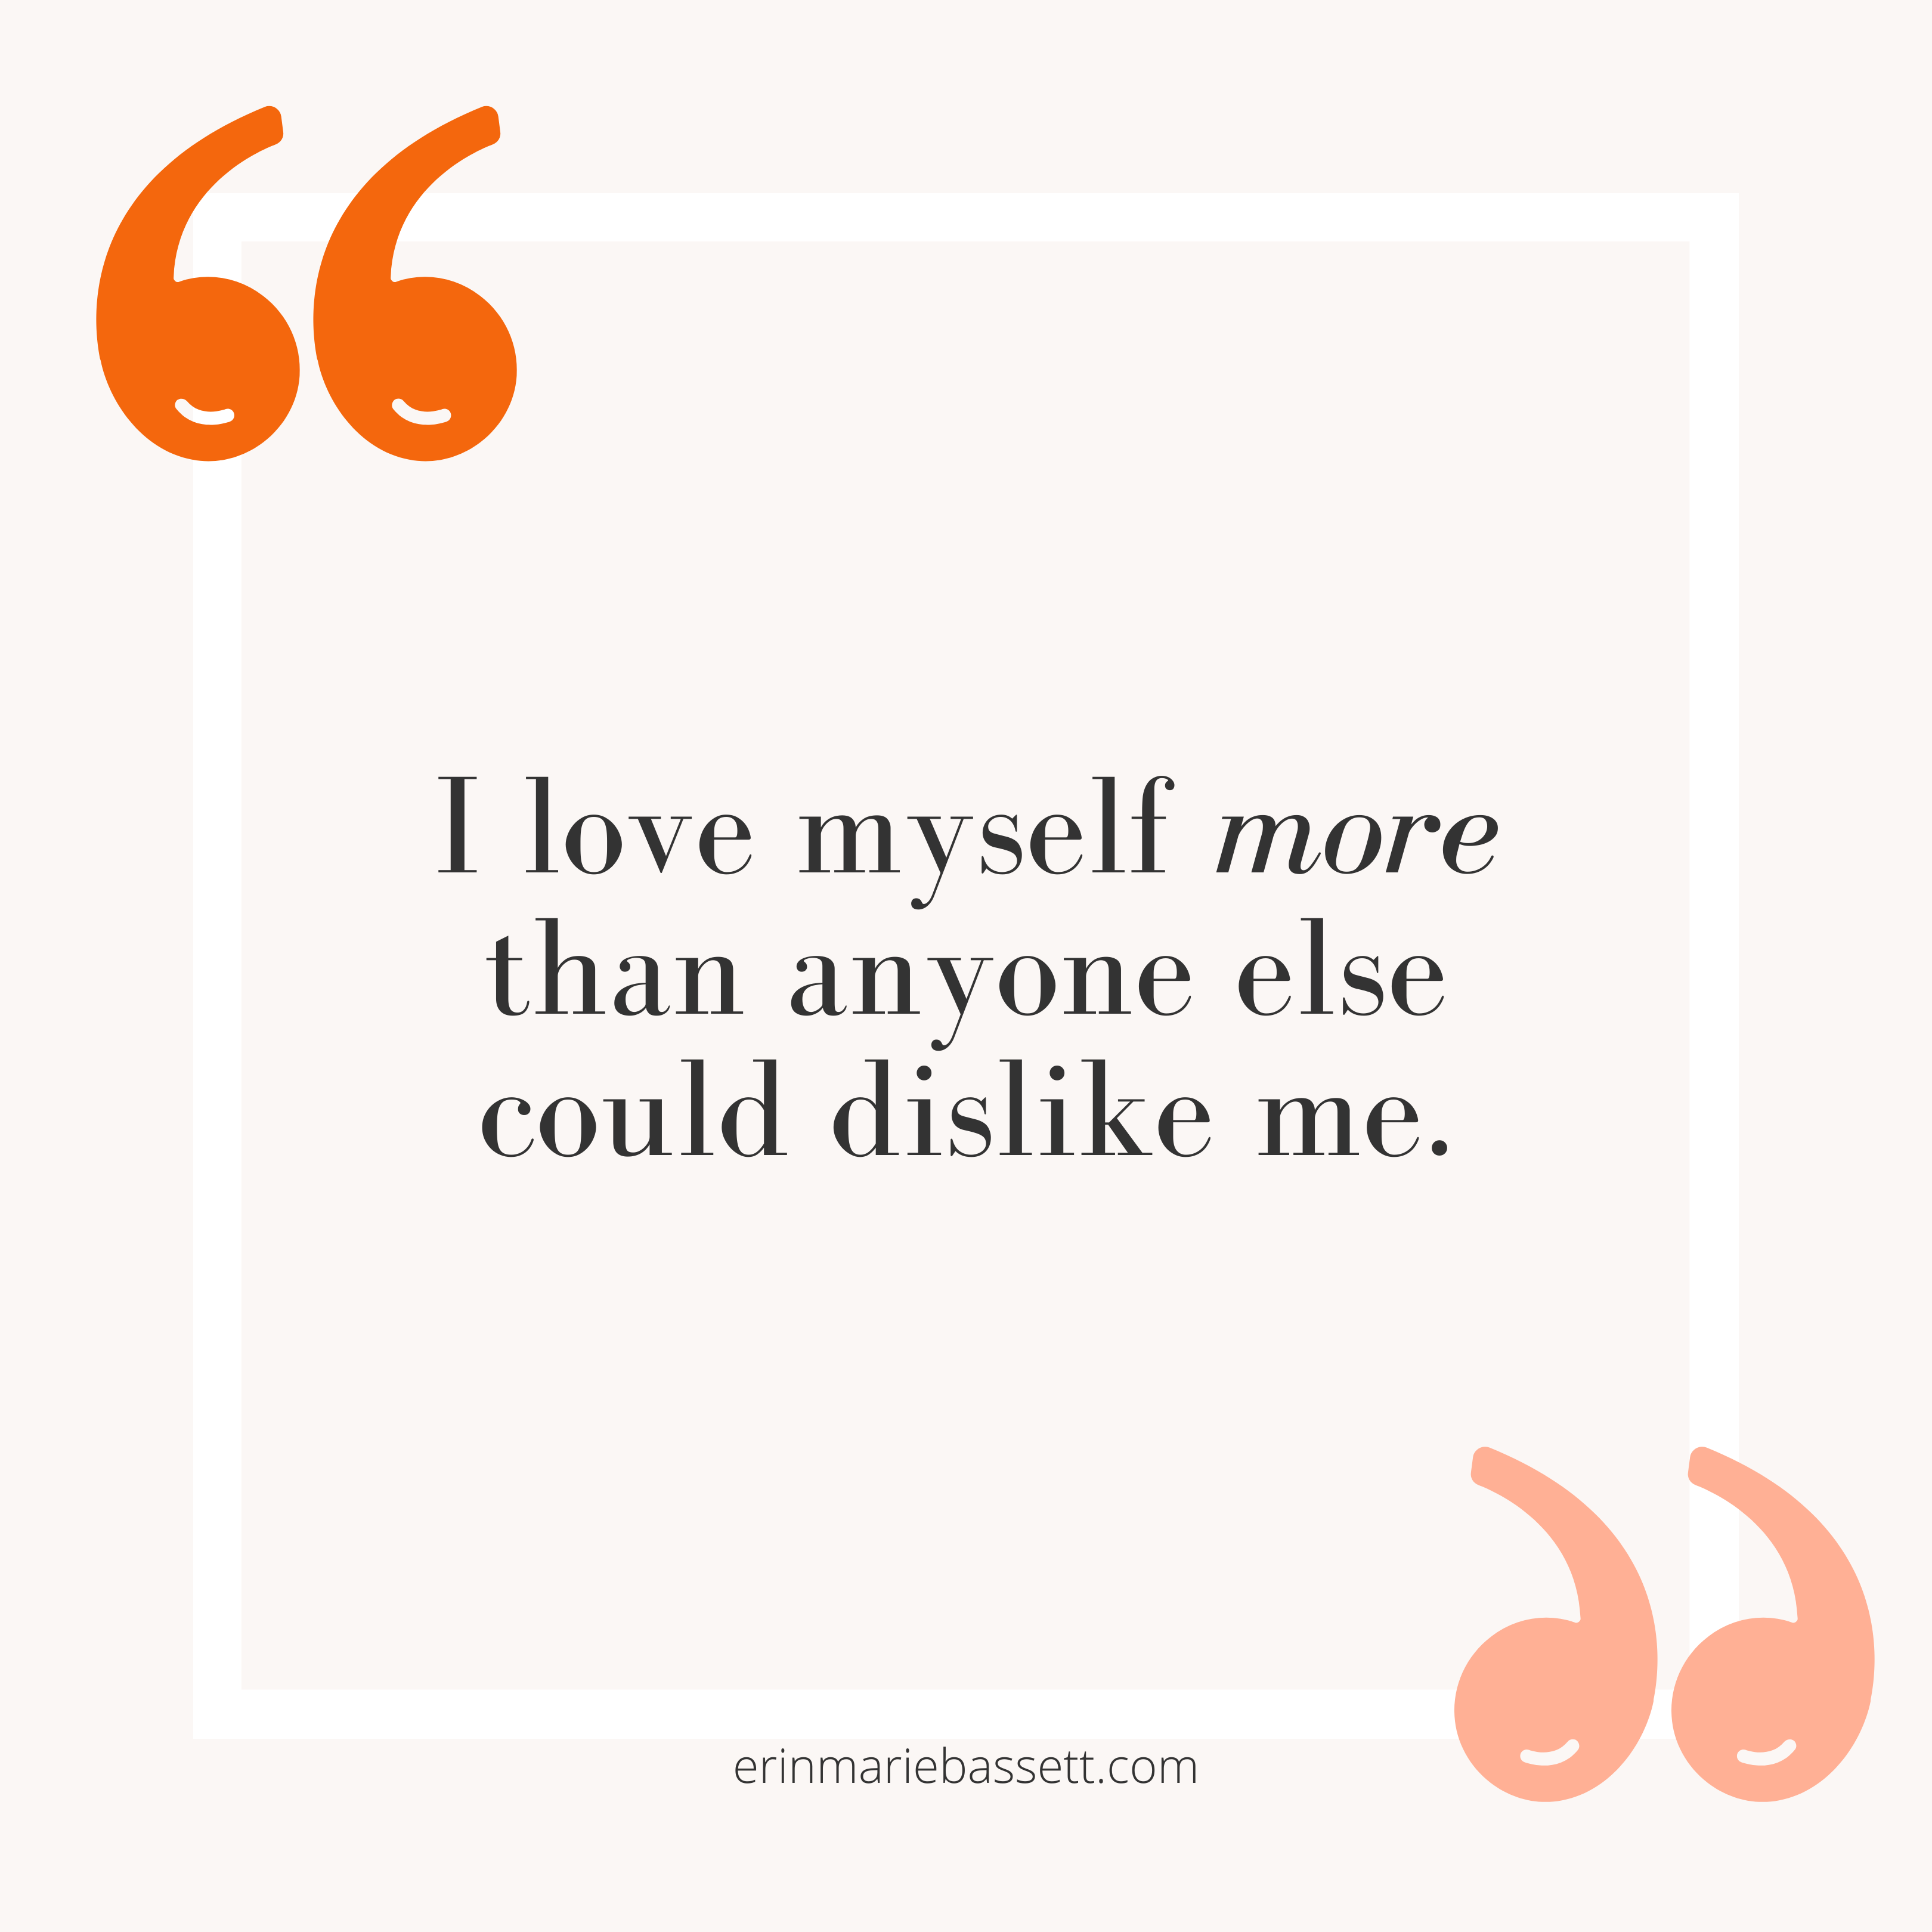 I love myself more than anyone else could dislike me.